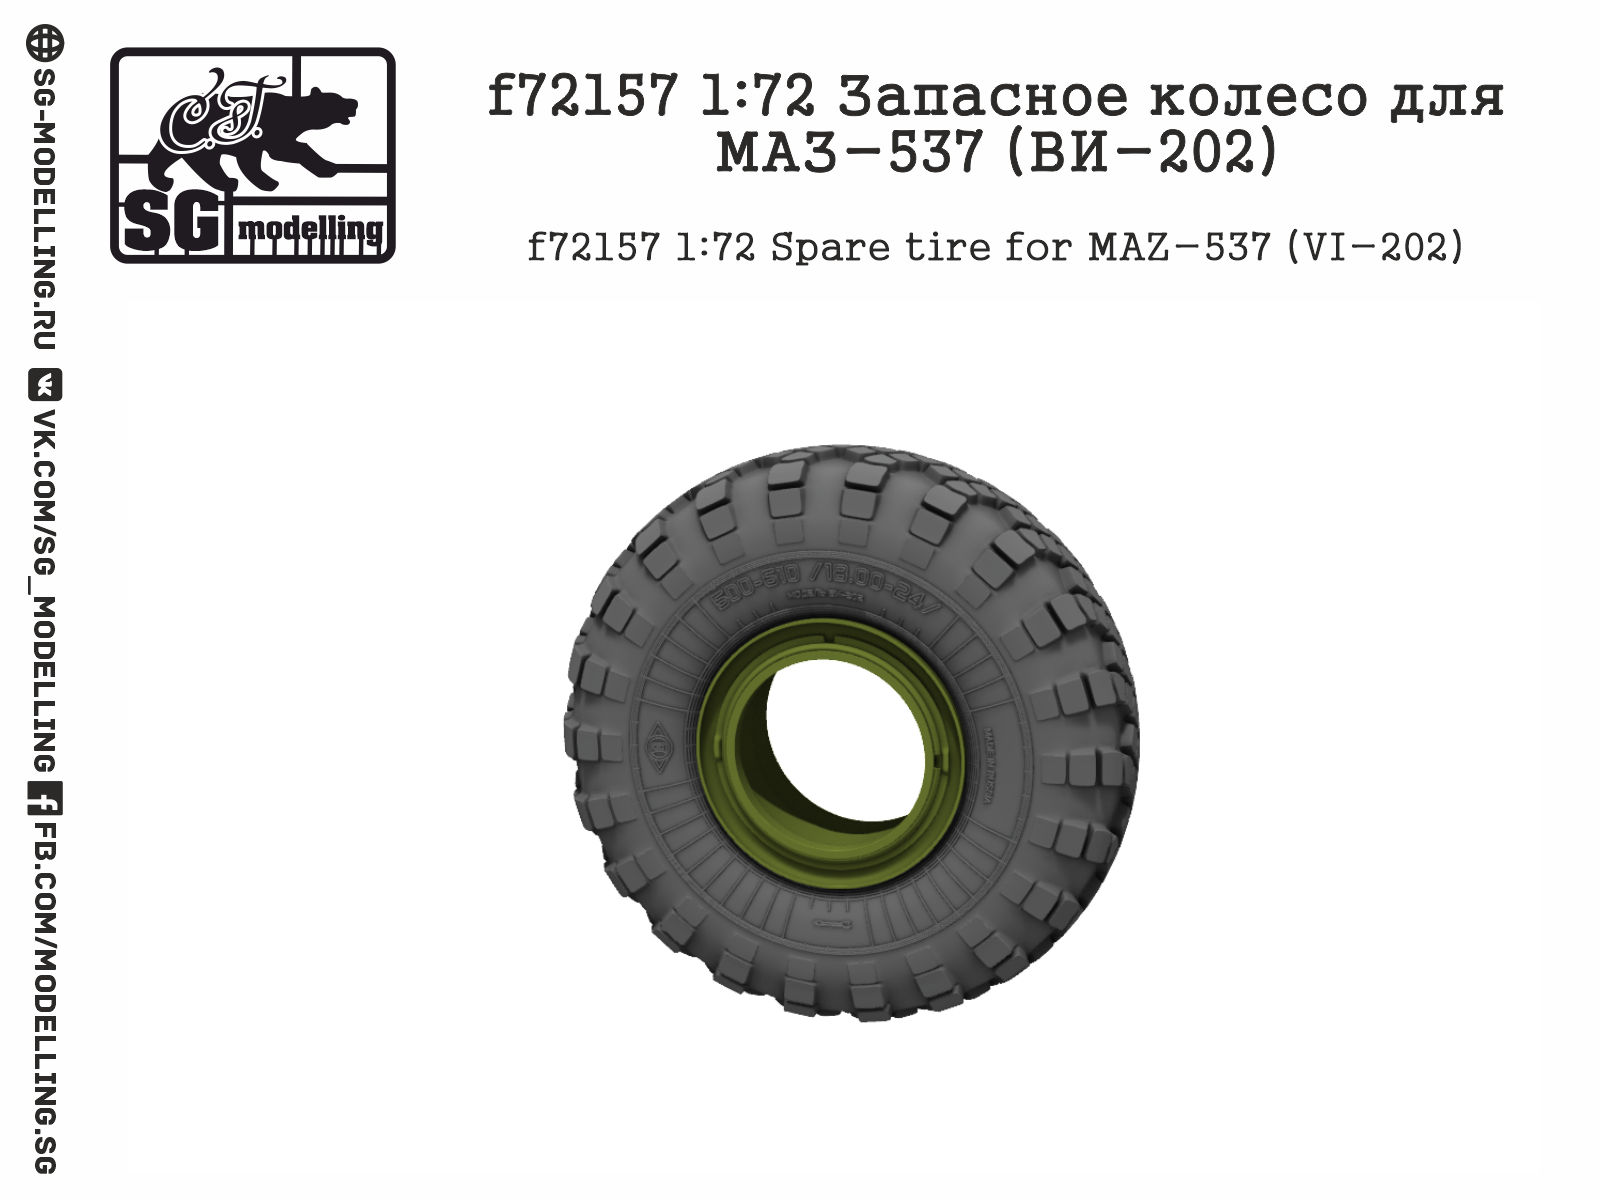 MAZ-537 VI-202 spare wheel